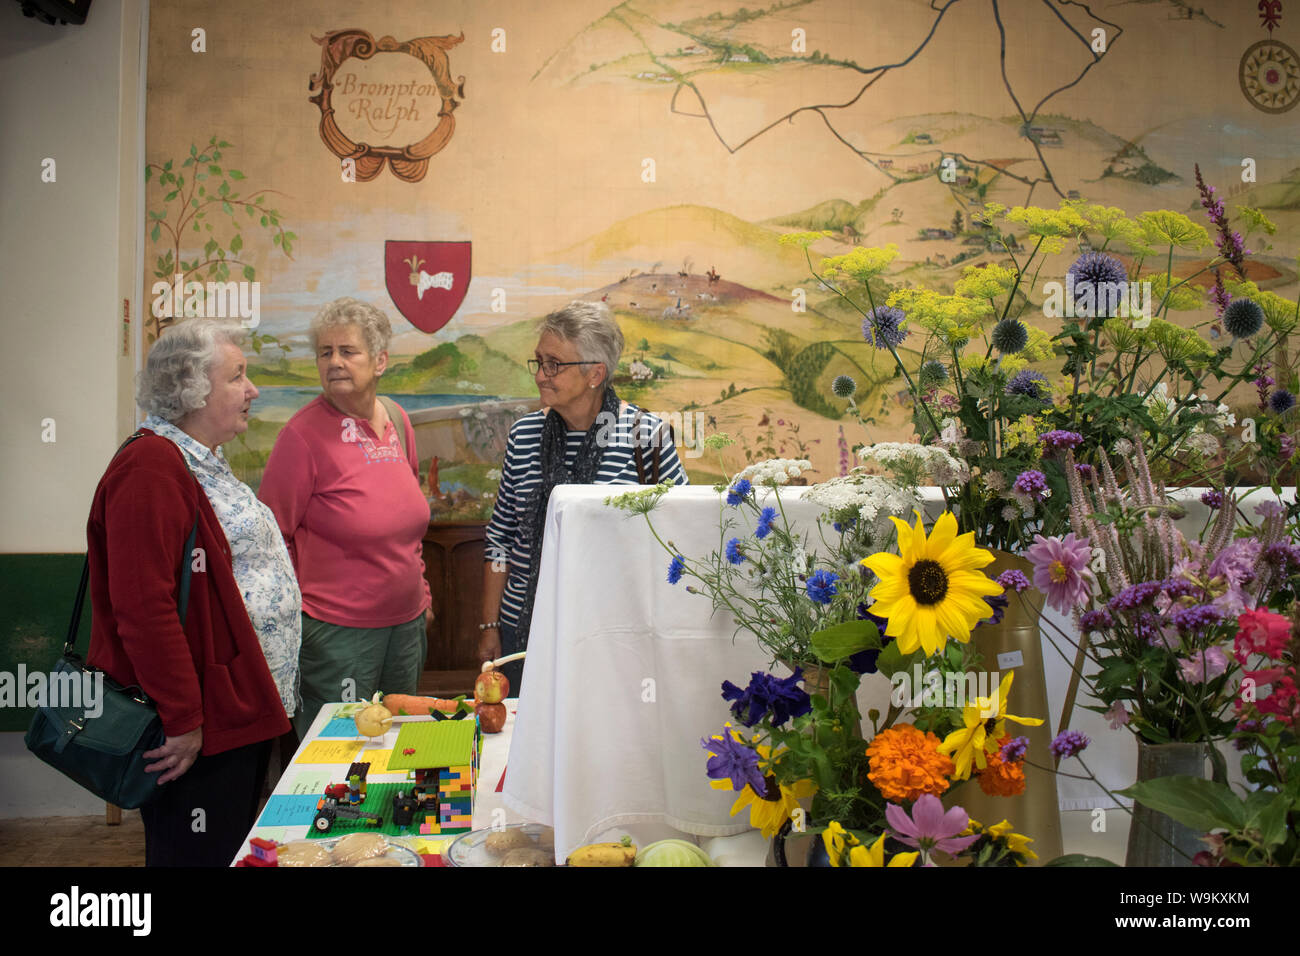 Dorf Flower Show 2010 s UK. Älteren Damen Frauen an einem Community Event Brompton Ralph, Somerset 2019. Malerei auf der Village Hall Wand ist von ihrer Gemeinschaft im Westen Land England HOMER SYKES Stockfoto